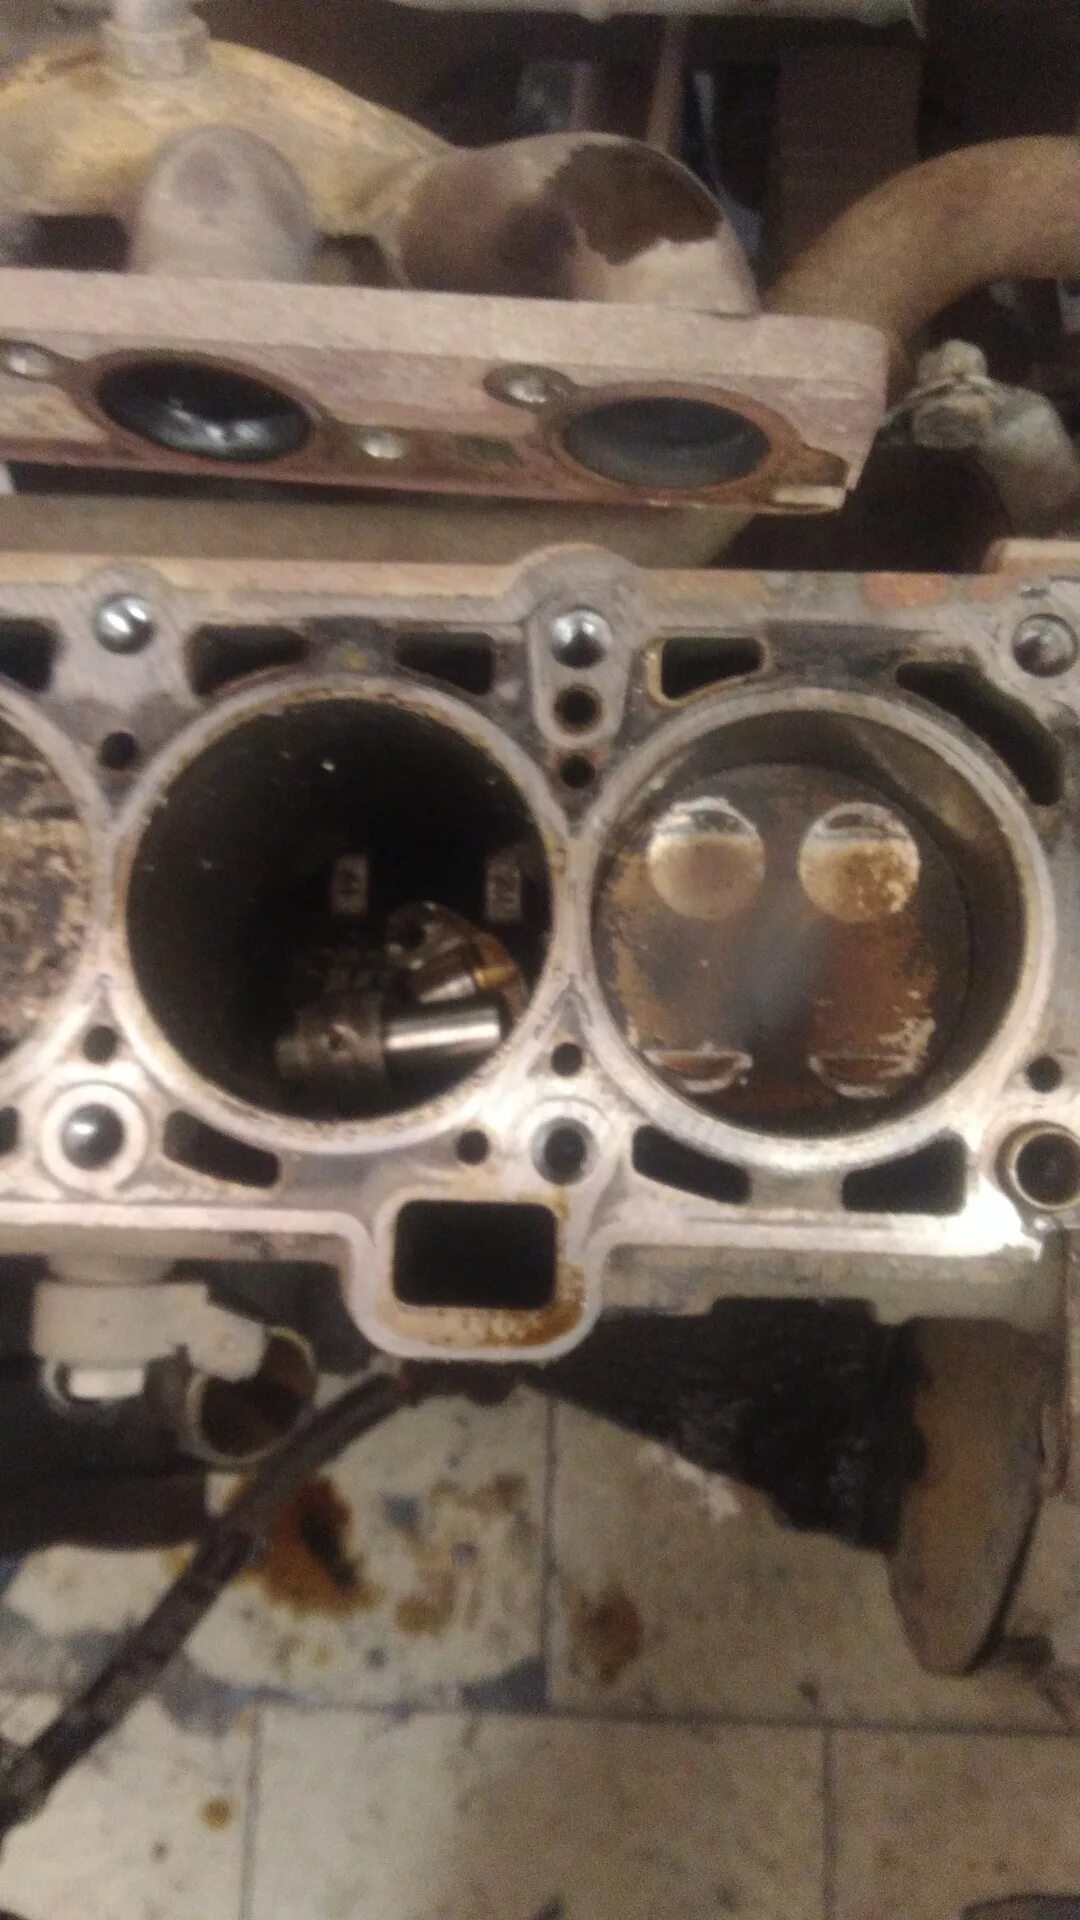 Двигатель весты гнет клапана. Двигатель Гранта 8 клапанов 11186 гнет ли клапана. Погнуло клапана Гранта 8 клапанная. Загнуло клапана Приора 16 клапанов. Погнуло клапана Гранта 8 клап.